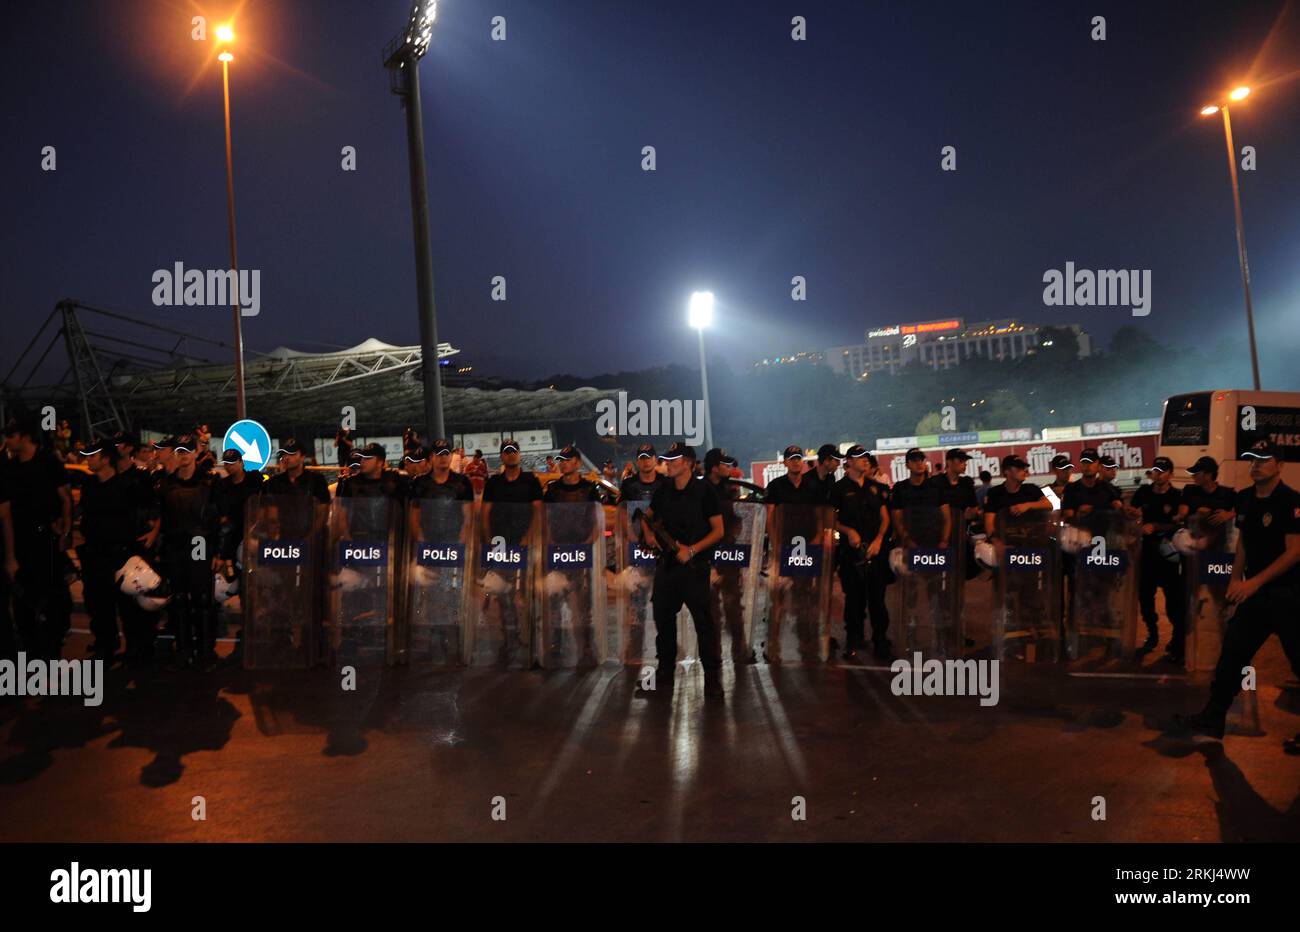 Bildnummer : 55985690 Datum : 15.09.2011 Copyright : imago/Xinhua (110916) -- ISTANBUL, 16 septembre 2011 (Xinhua) -- des policiers bloquent l'entrée d'un stade lors d'une manifestation de protestation contre Israël, à Istanbul, Turquie, le 15 septembre 2011. Plus de 1 000 personnes ont défilé jeudi à Istanbul pour protester contre l'apparition de l'équipe israélienne Maccabi tel Aviv dans la ville pour rivaliser avec Besiktas de Turquie dans l'UEFA Europa League. (Xinhua/Ma Yan) (axy) TURQUIE-ISTANBUL-ISRAËL-PROTEST PUBLICATIONxNOTxINxCHN Gesellschaft Politik Nahostkonflikt Demo Protest Premiumd xns x0x 2011 quer 559 Banque D'Images